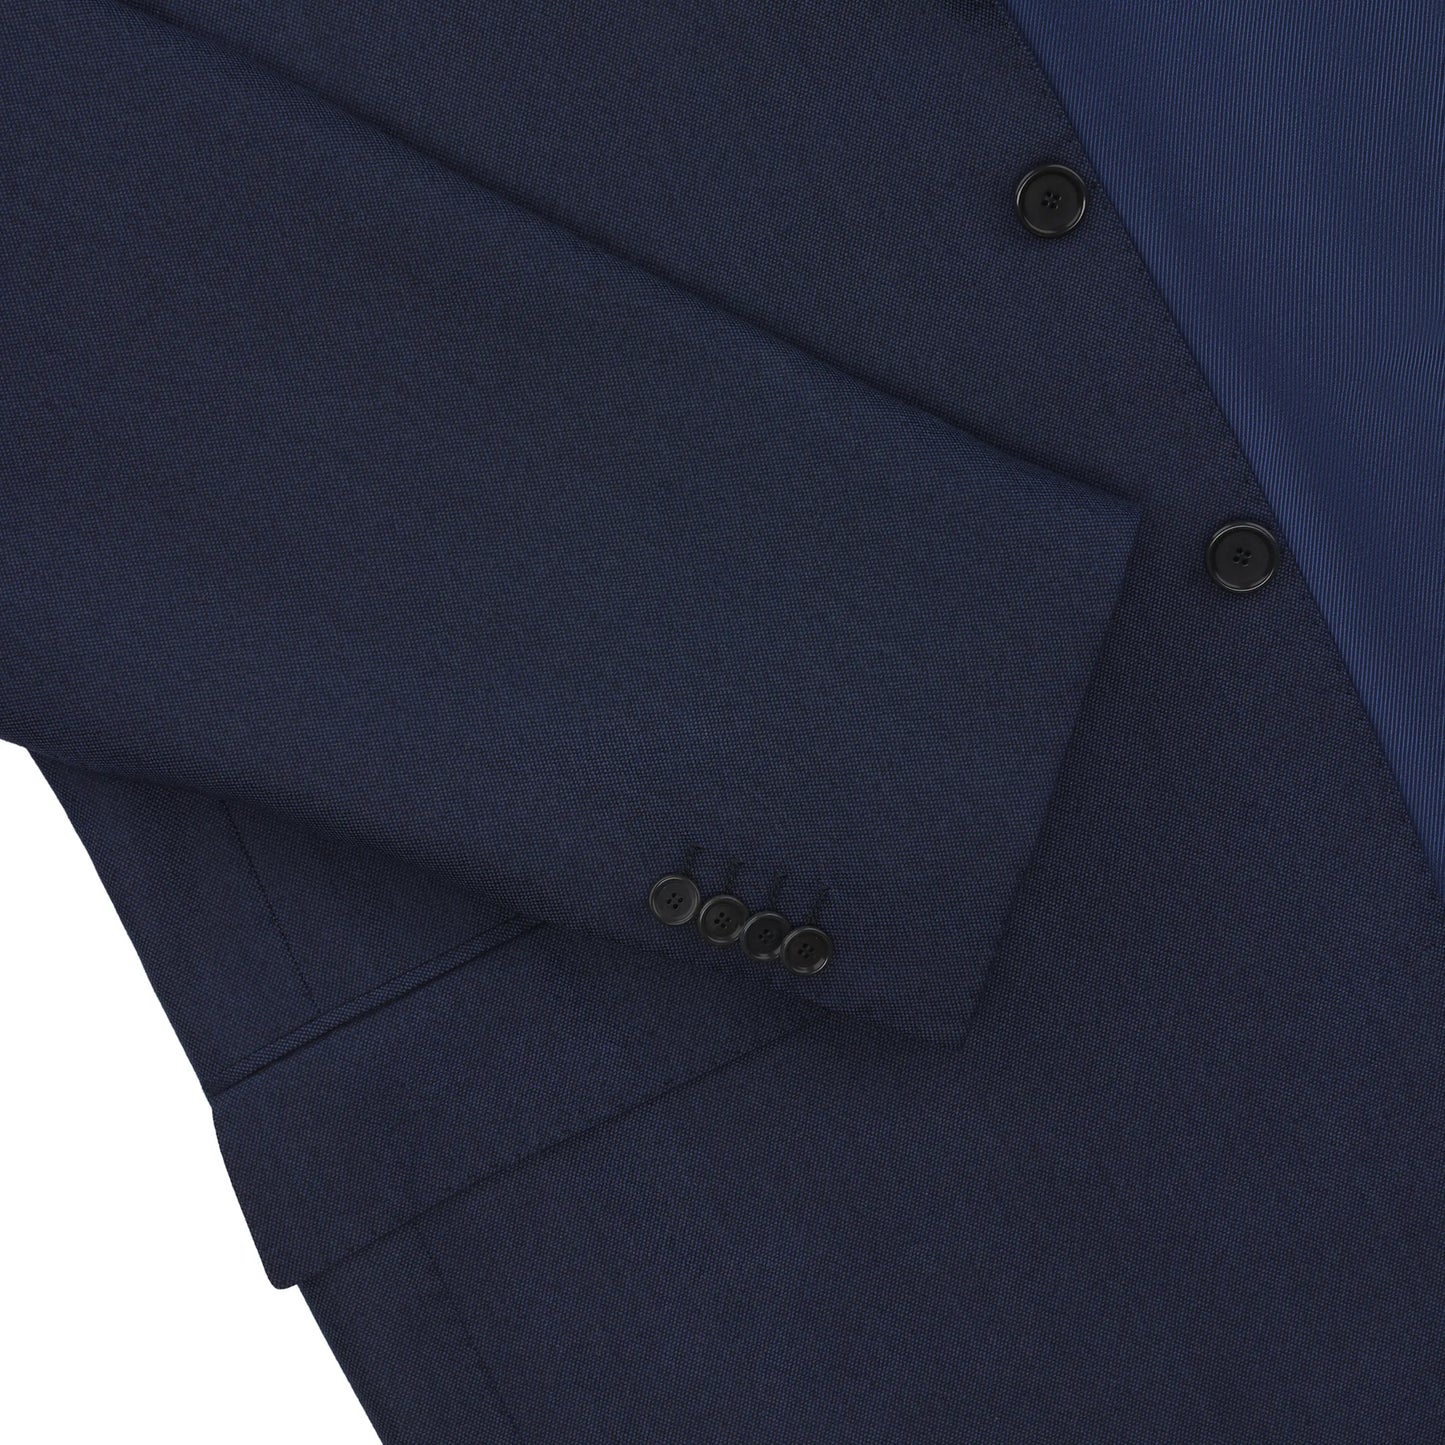 Einreihiger Anzug aus einer Woll-Kaschmir-Mischung in Blau